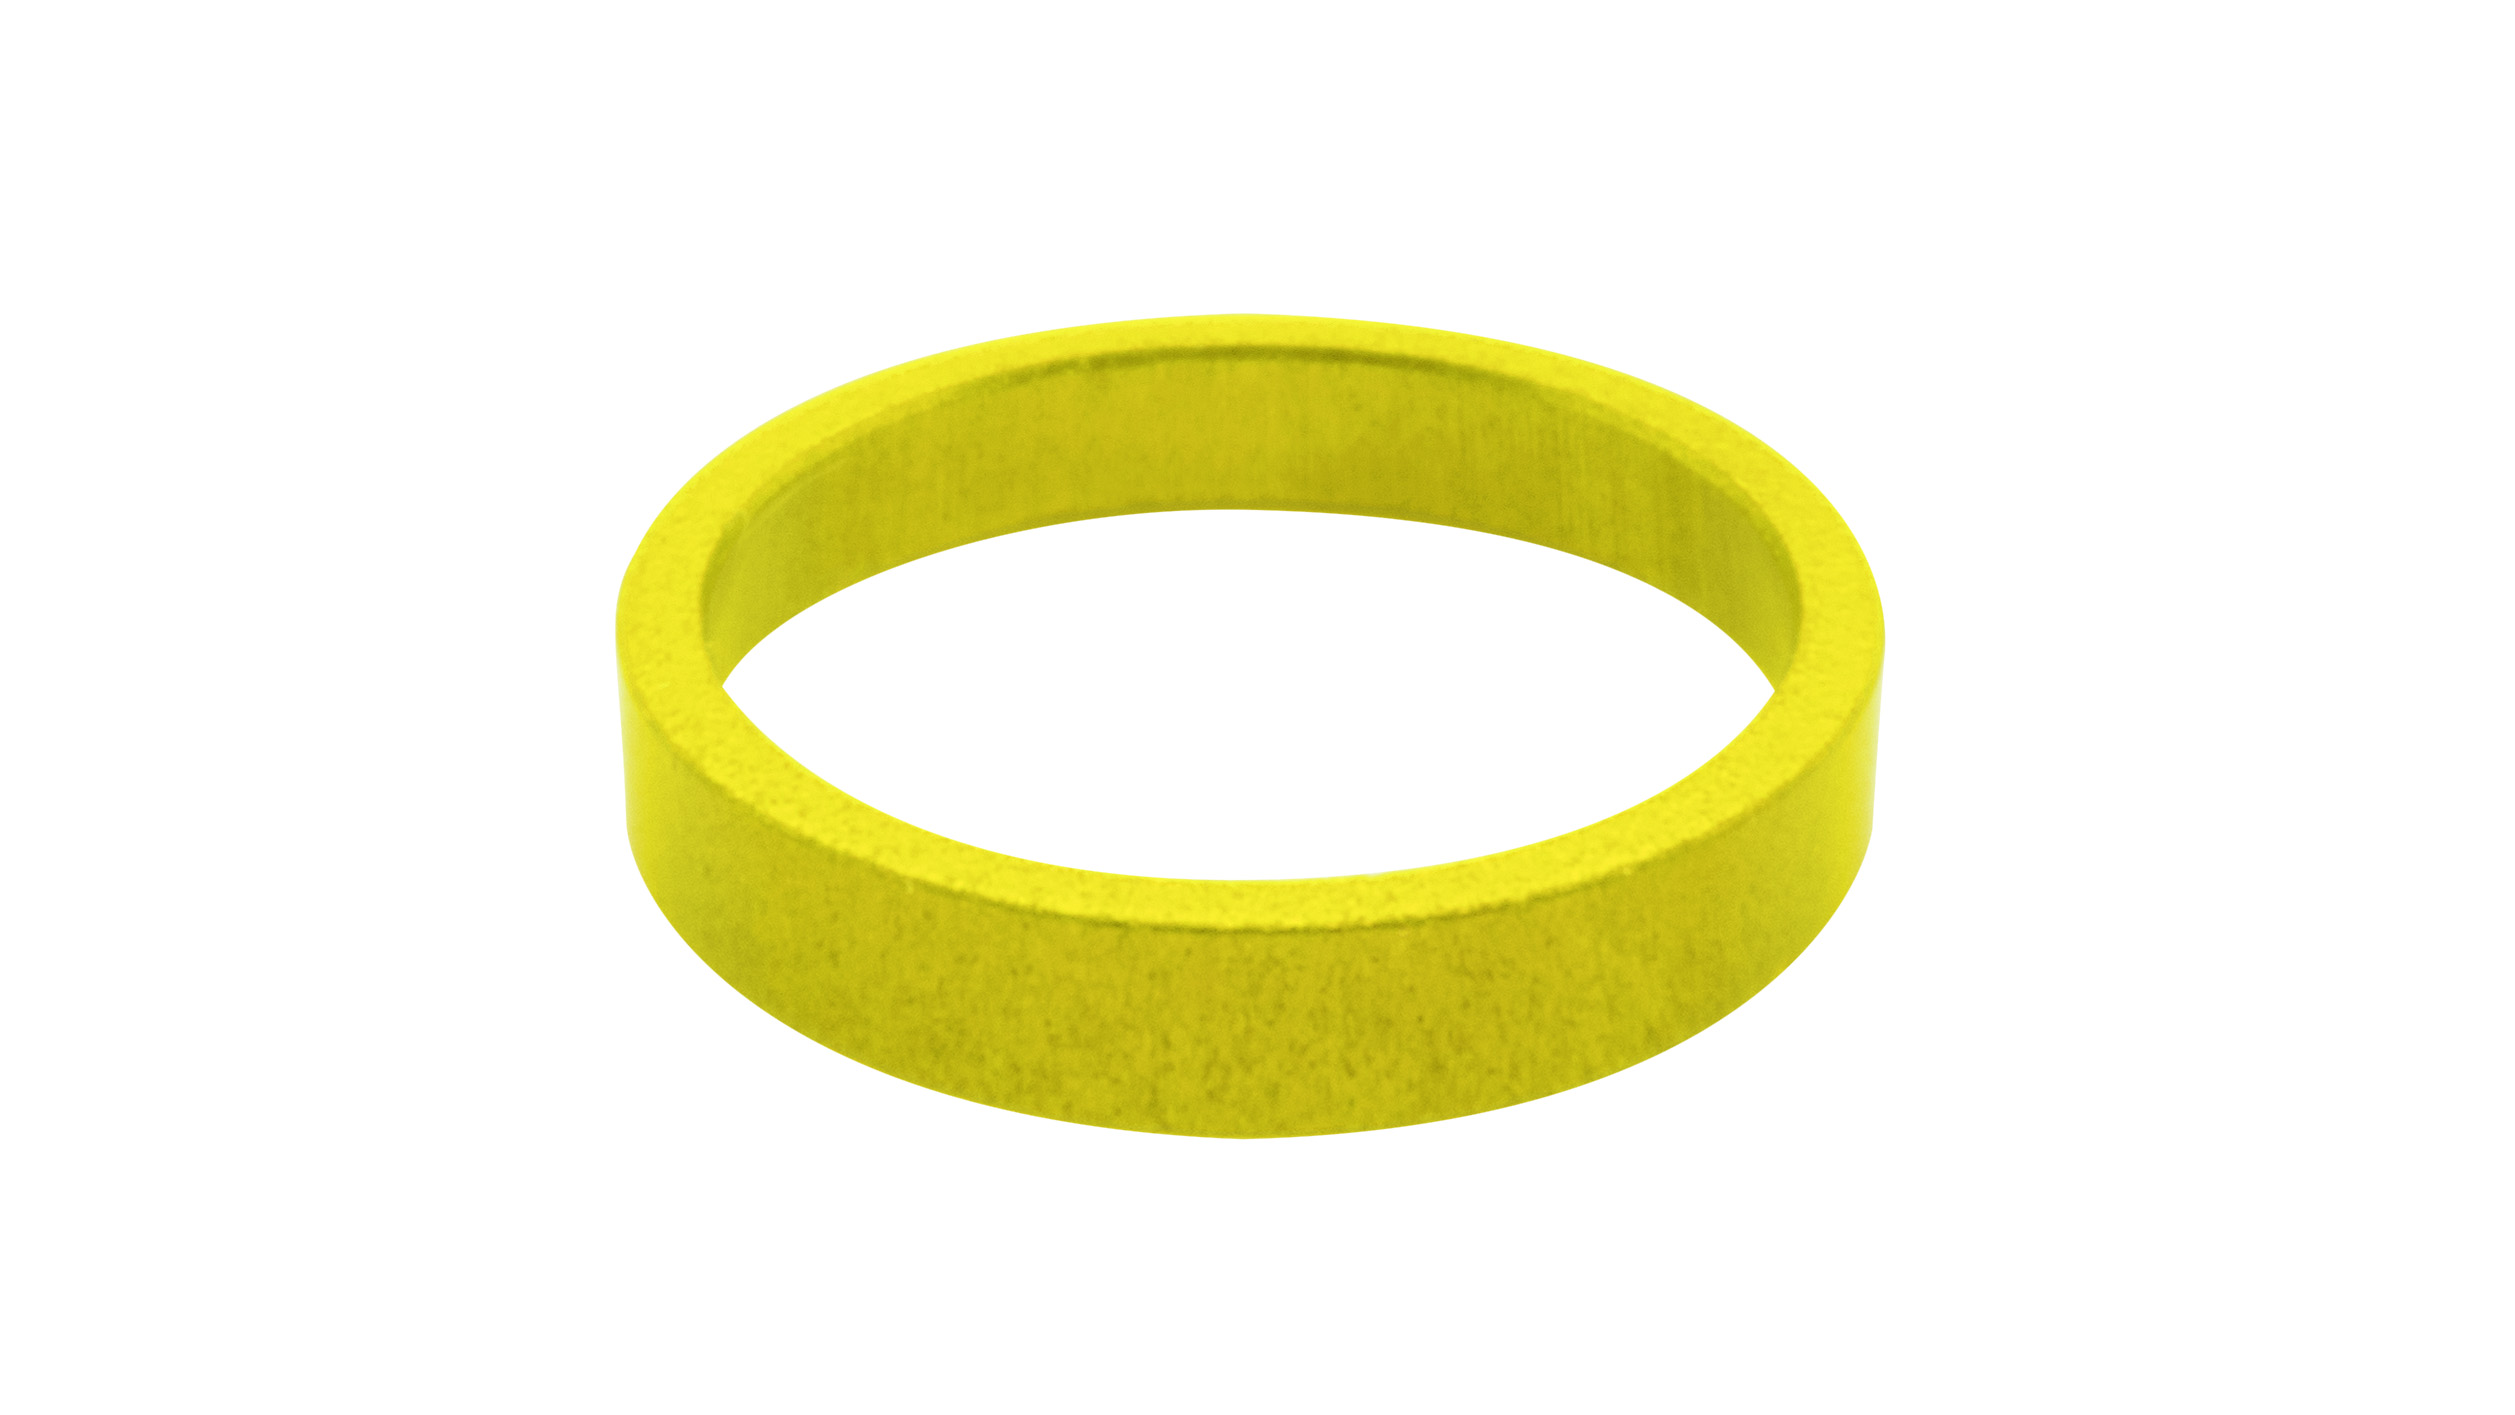 Identifikationsring, gelb, für Petitpierre ACR, Klinge 0,8 mm